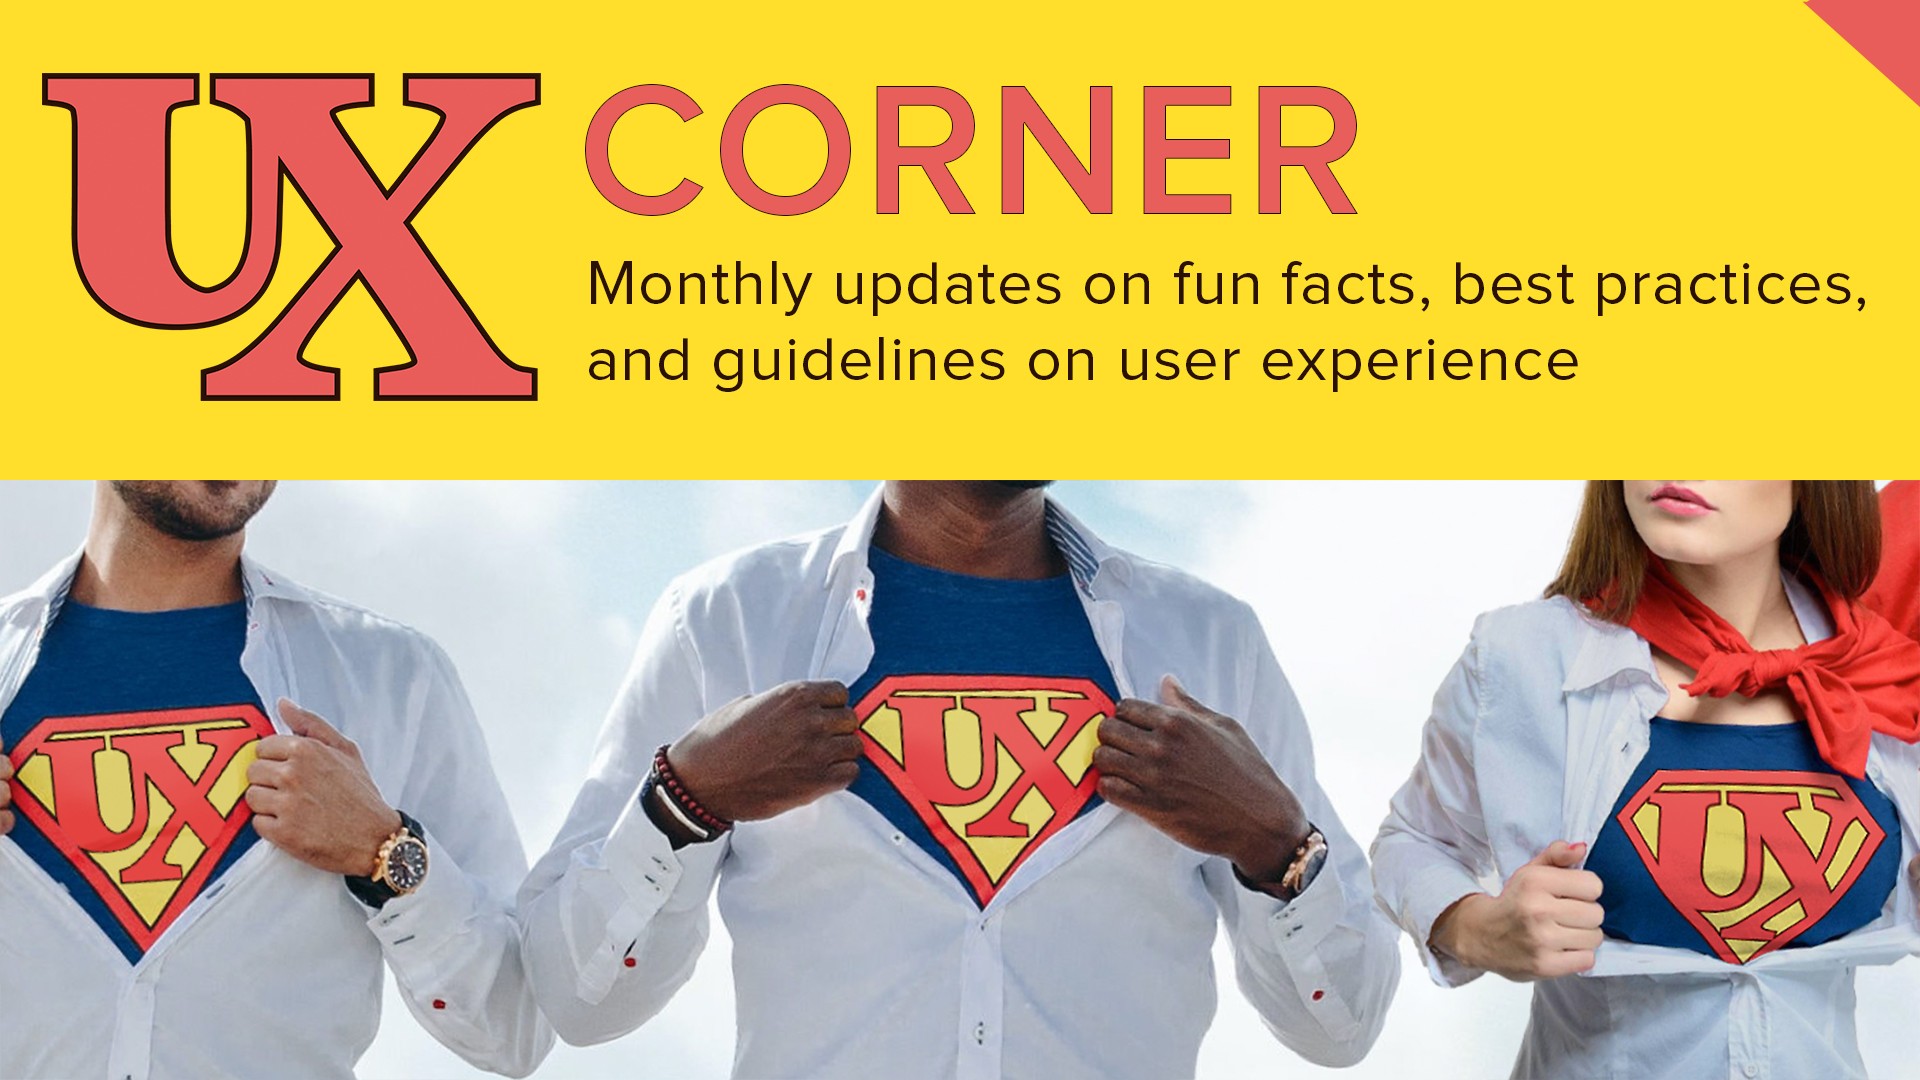 3 UX Corner superheroes